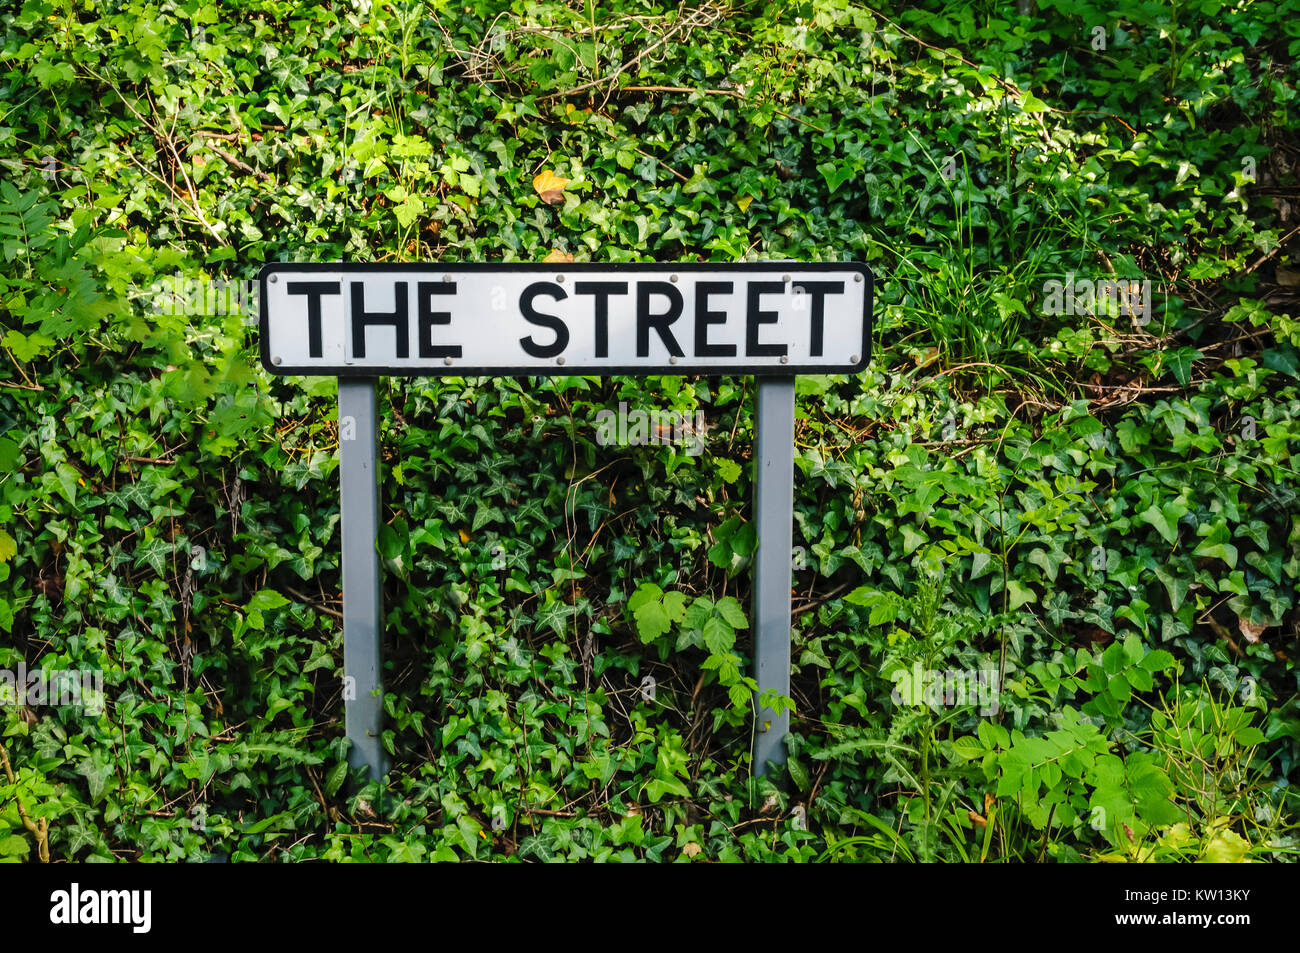 Straßenschild für eine Straße namens "The Street" Stockfoto